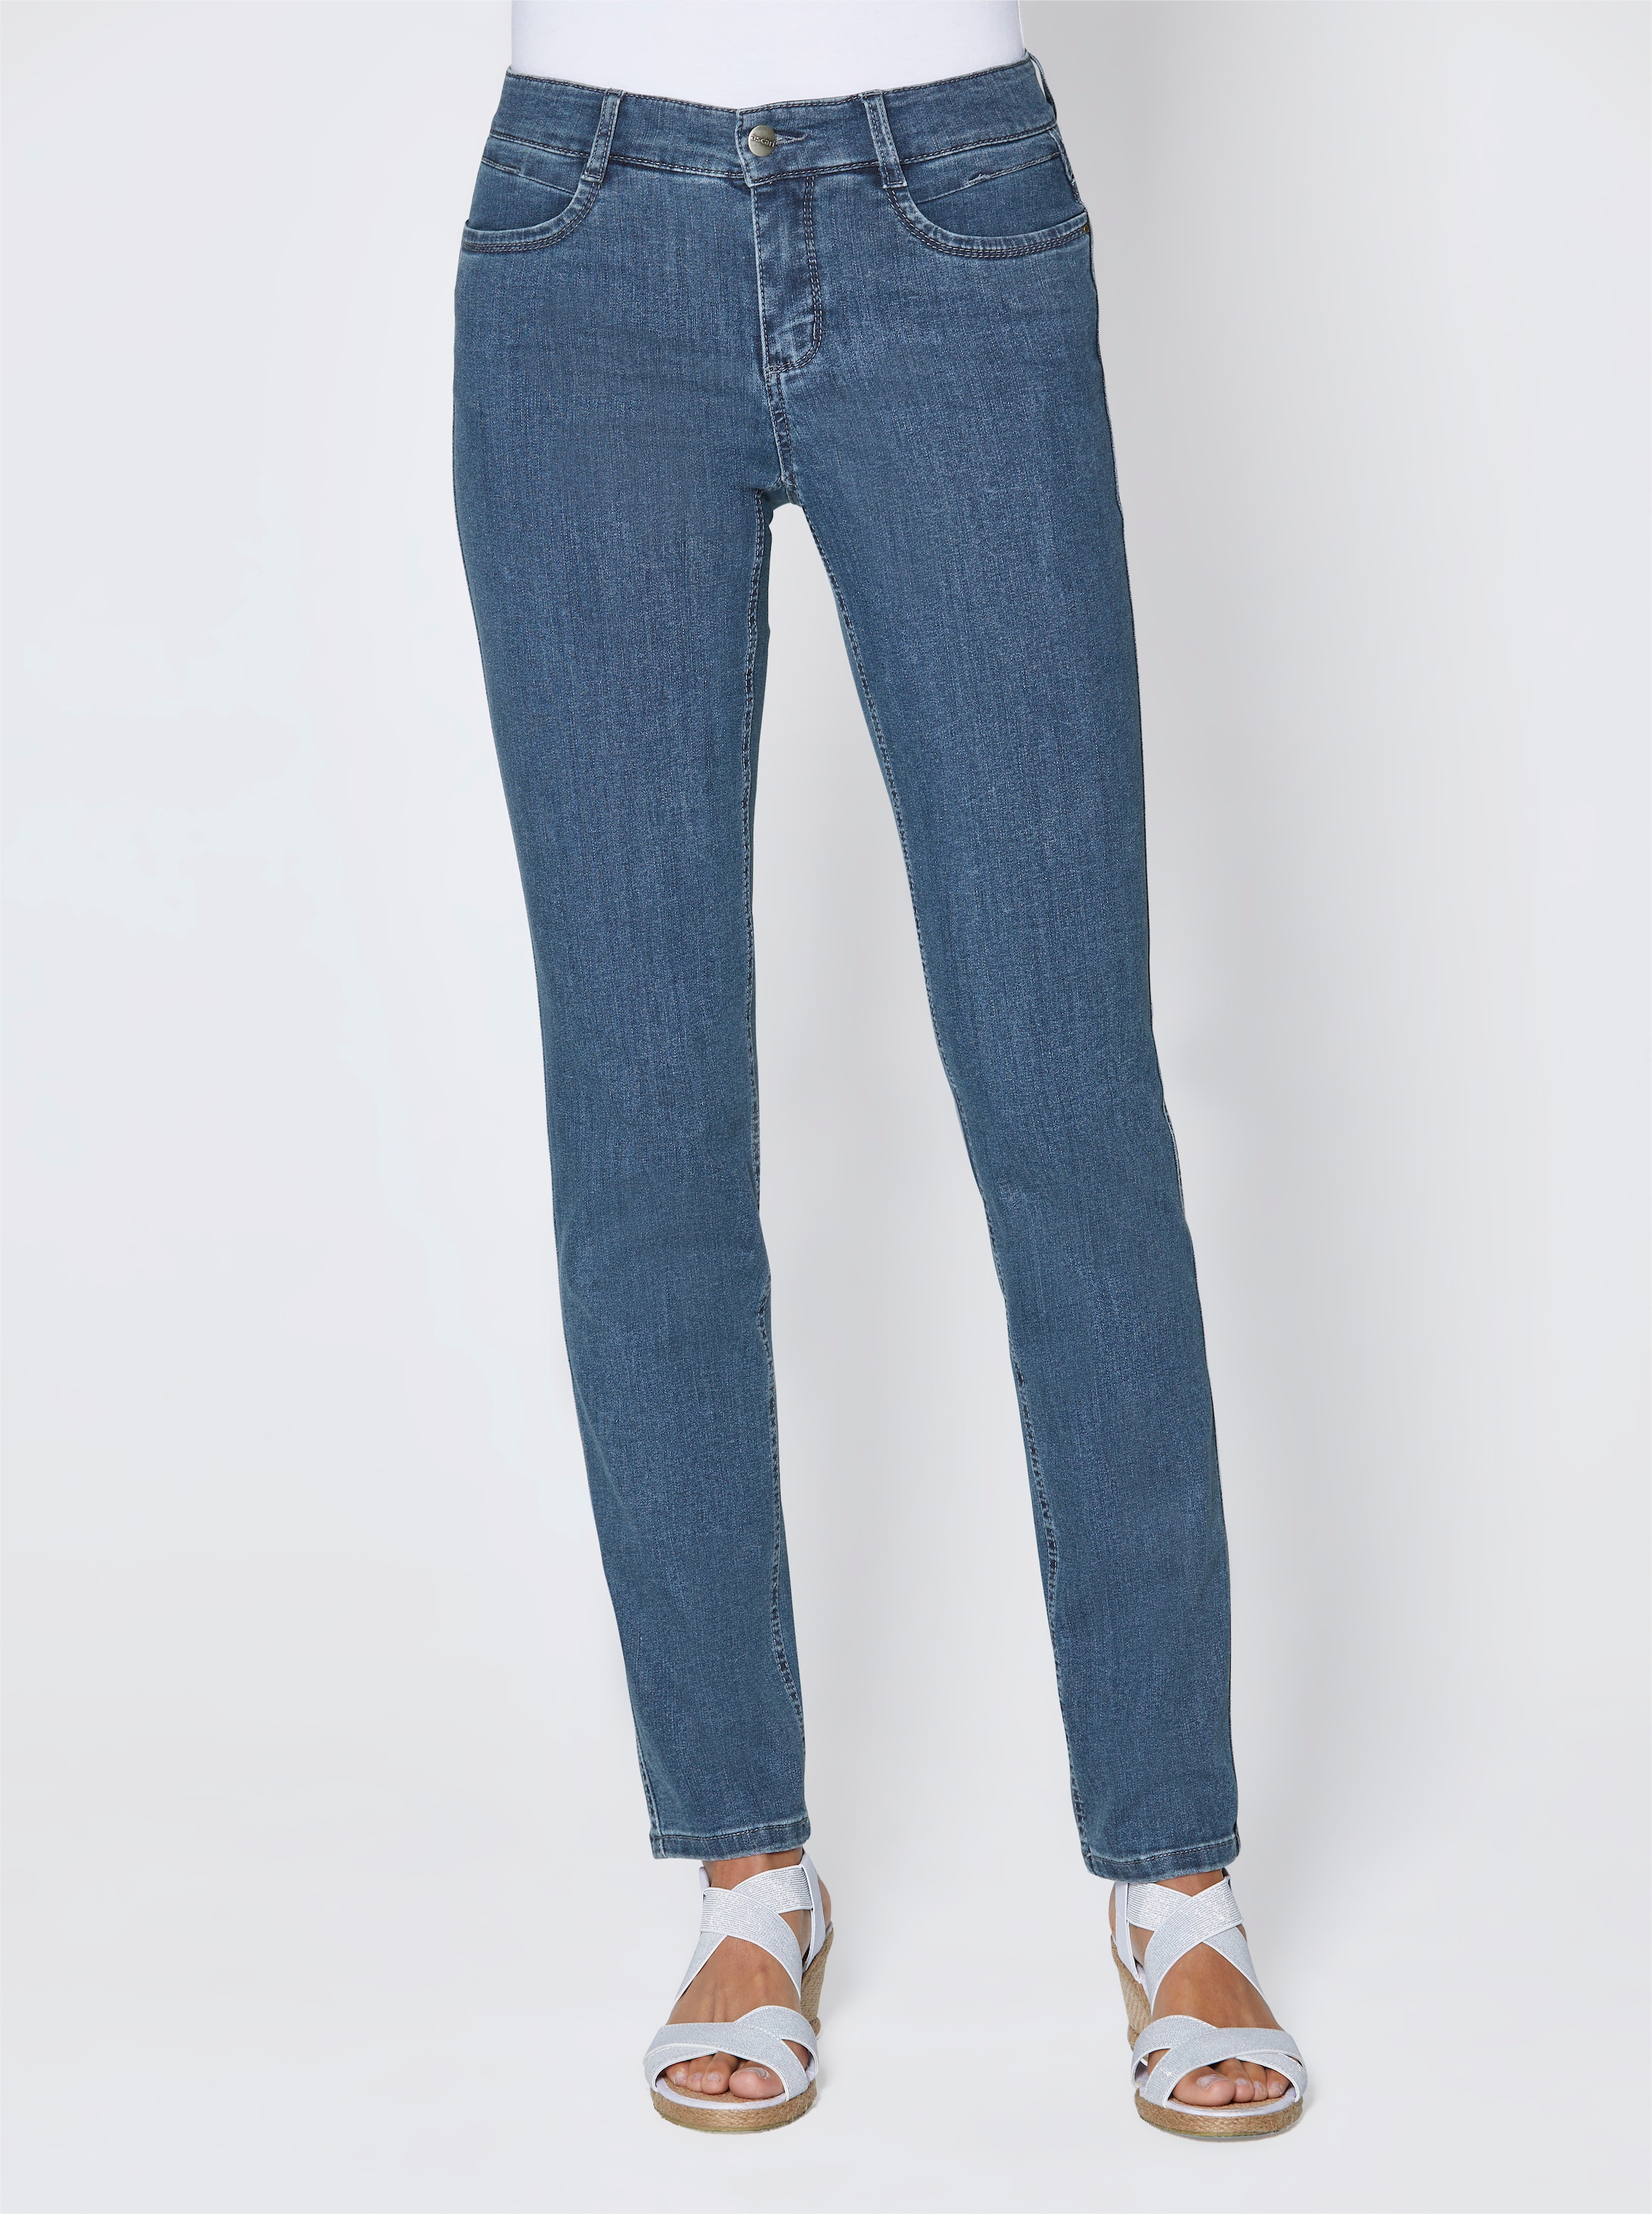 Tortendeko,Super günstig Kaufen-Stretch-Jeans in jeansblau von Ascari. Stretch-Jeans in jeansblau von Ascari <![CDATA[Perfekt zur aktuellen Mode! Edel-Jeans in schmaler Röhrenform. Sitzt super und ist herrlich bequem dank der bi-elastischen Superstretch-Qualität. Unser Tipp: Für eine